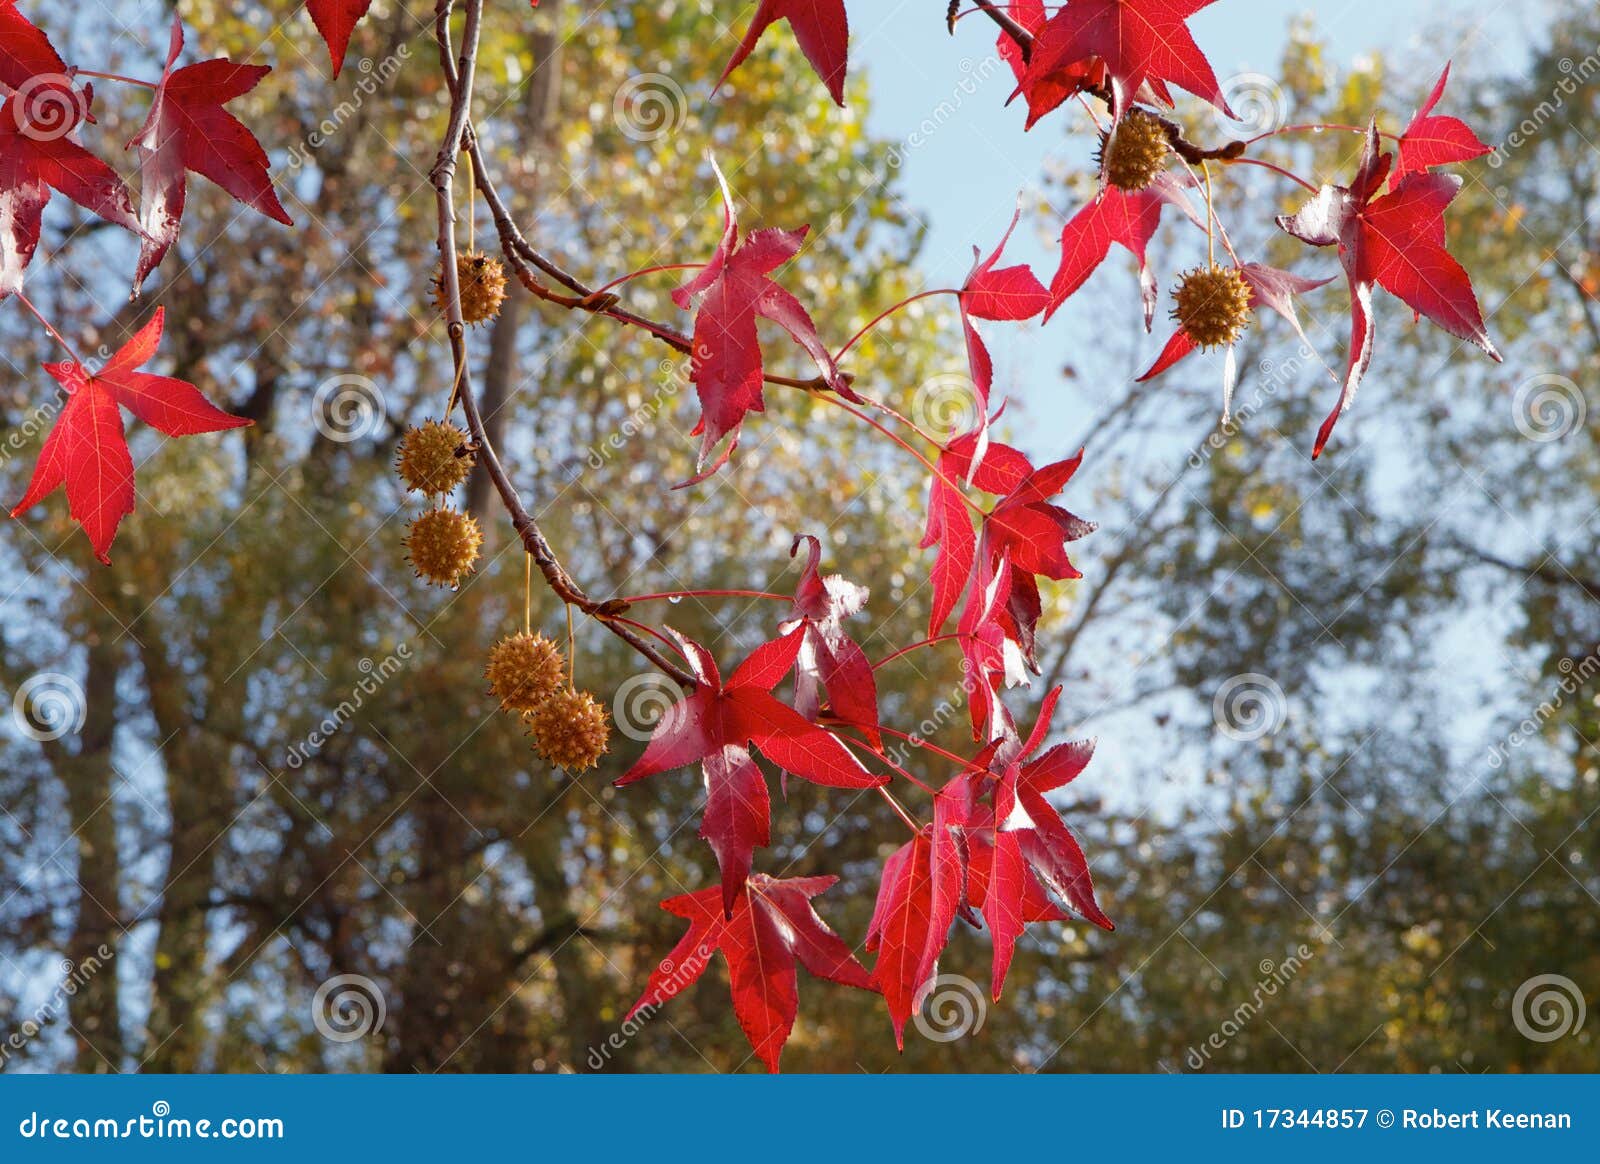 red sweetgum tree leaves